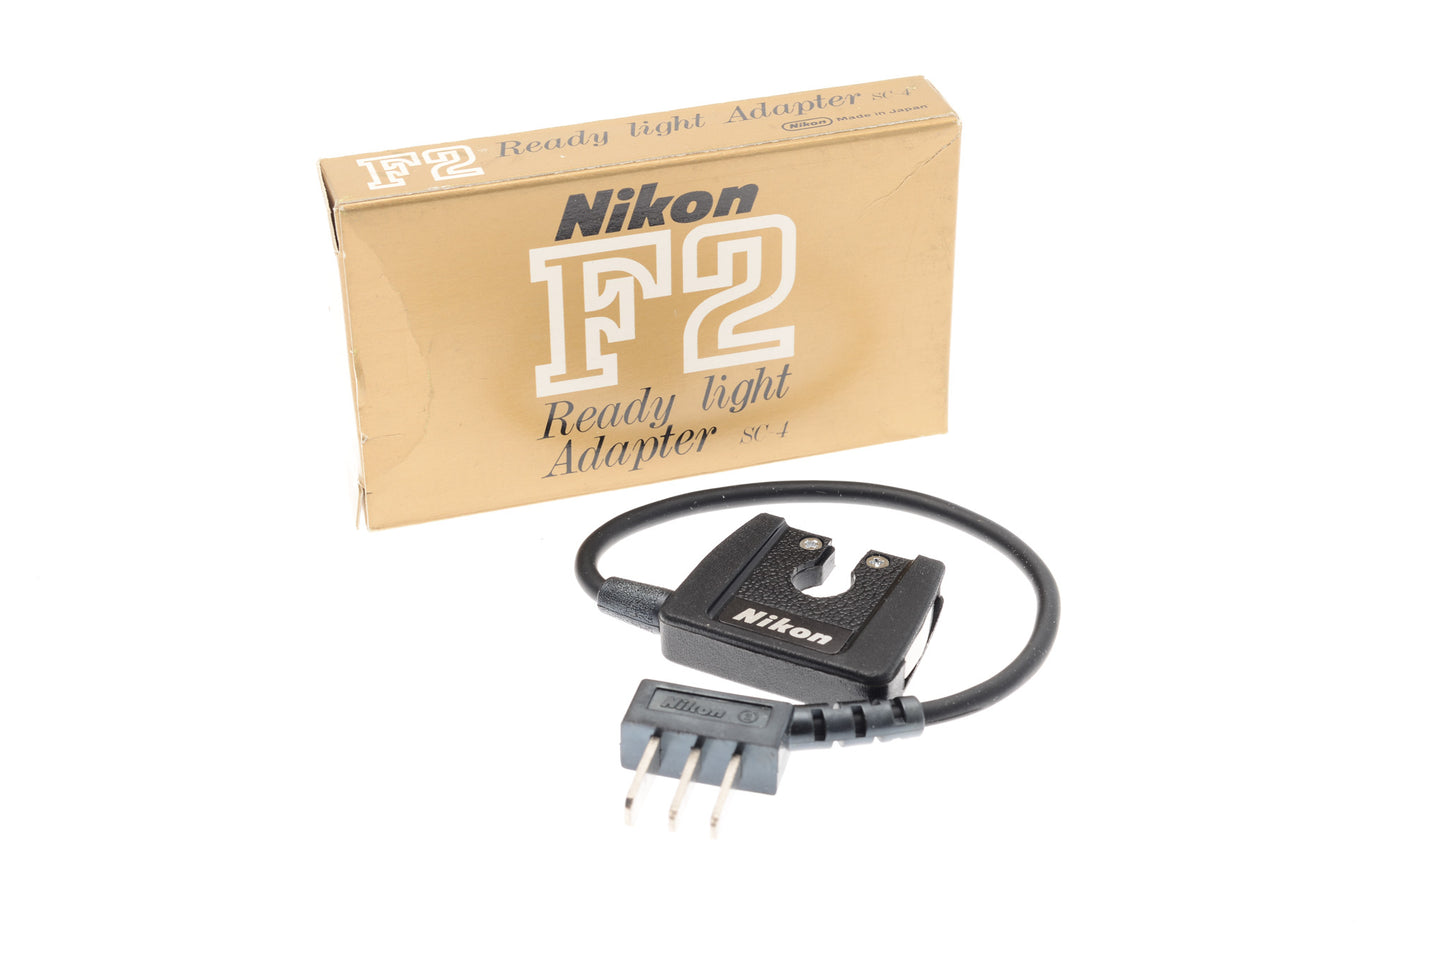 Nikon SC-4 Ready Light Adapter - Accessory